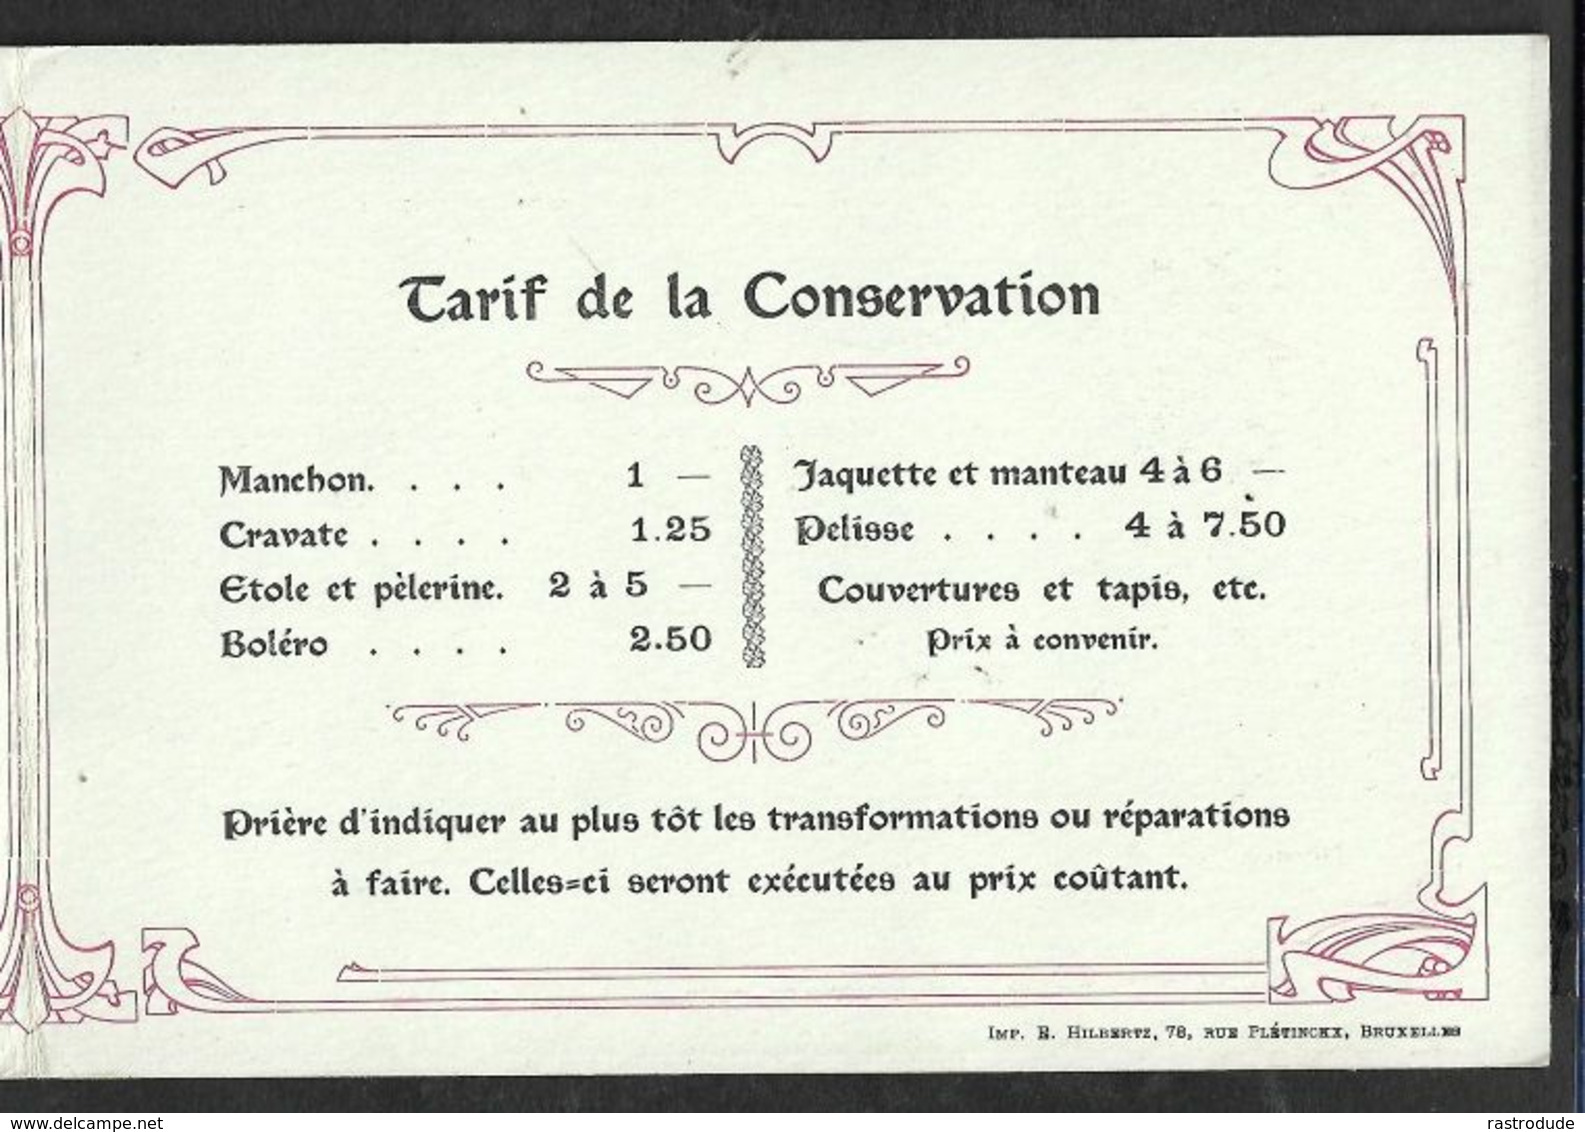 1907 BELGIQUE - IMPRIMÉ PRÉOBLITÉRÉ 1c BRUXELLES  A GAND  - FOURRURES EN GROS, PHILIPP NORDEN - Rolstempels 1900-09